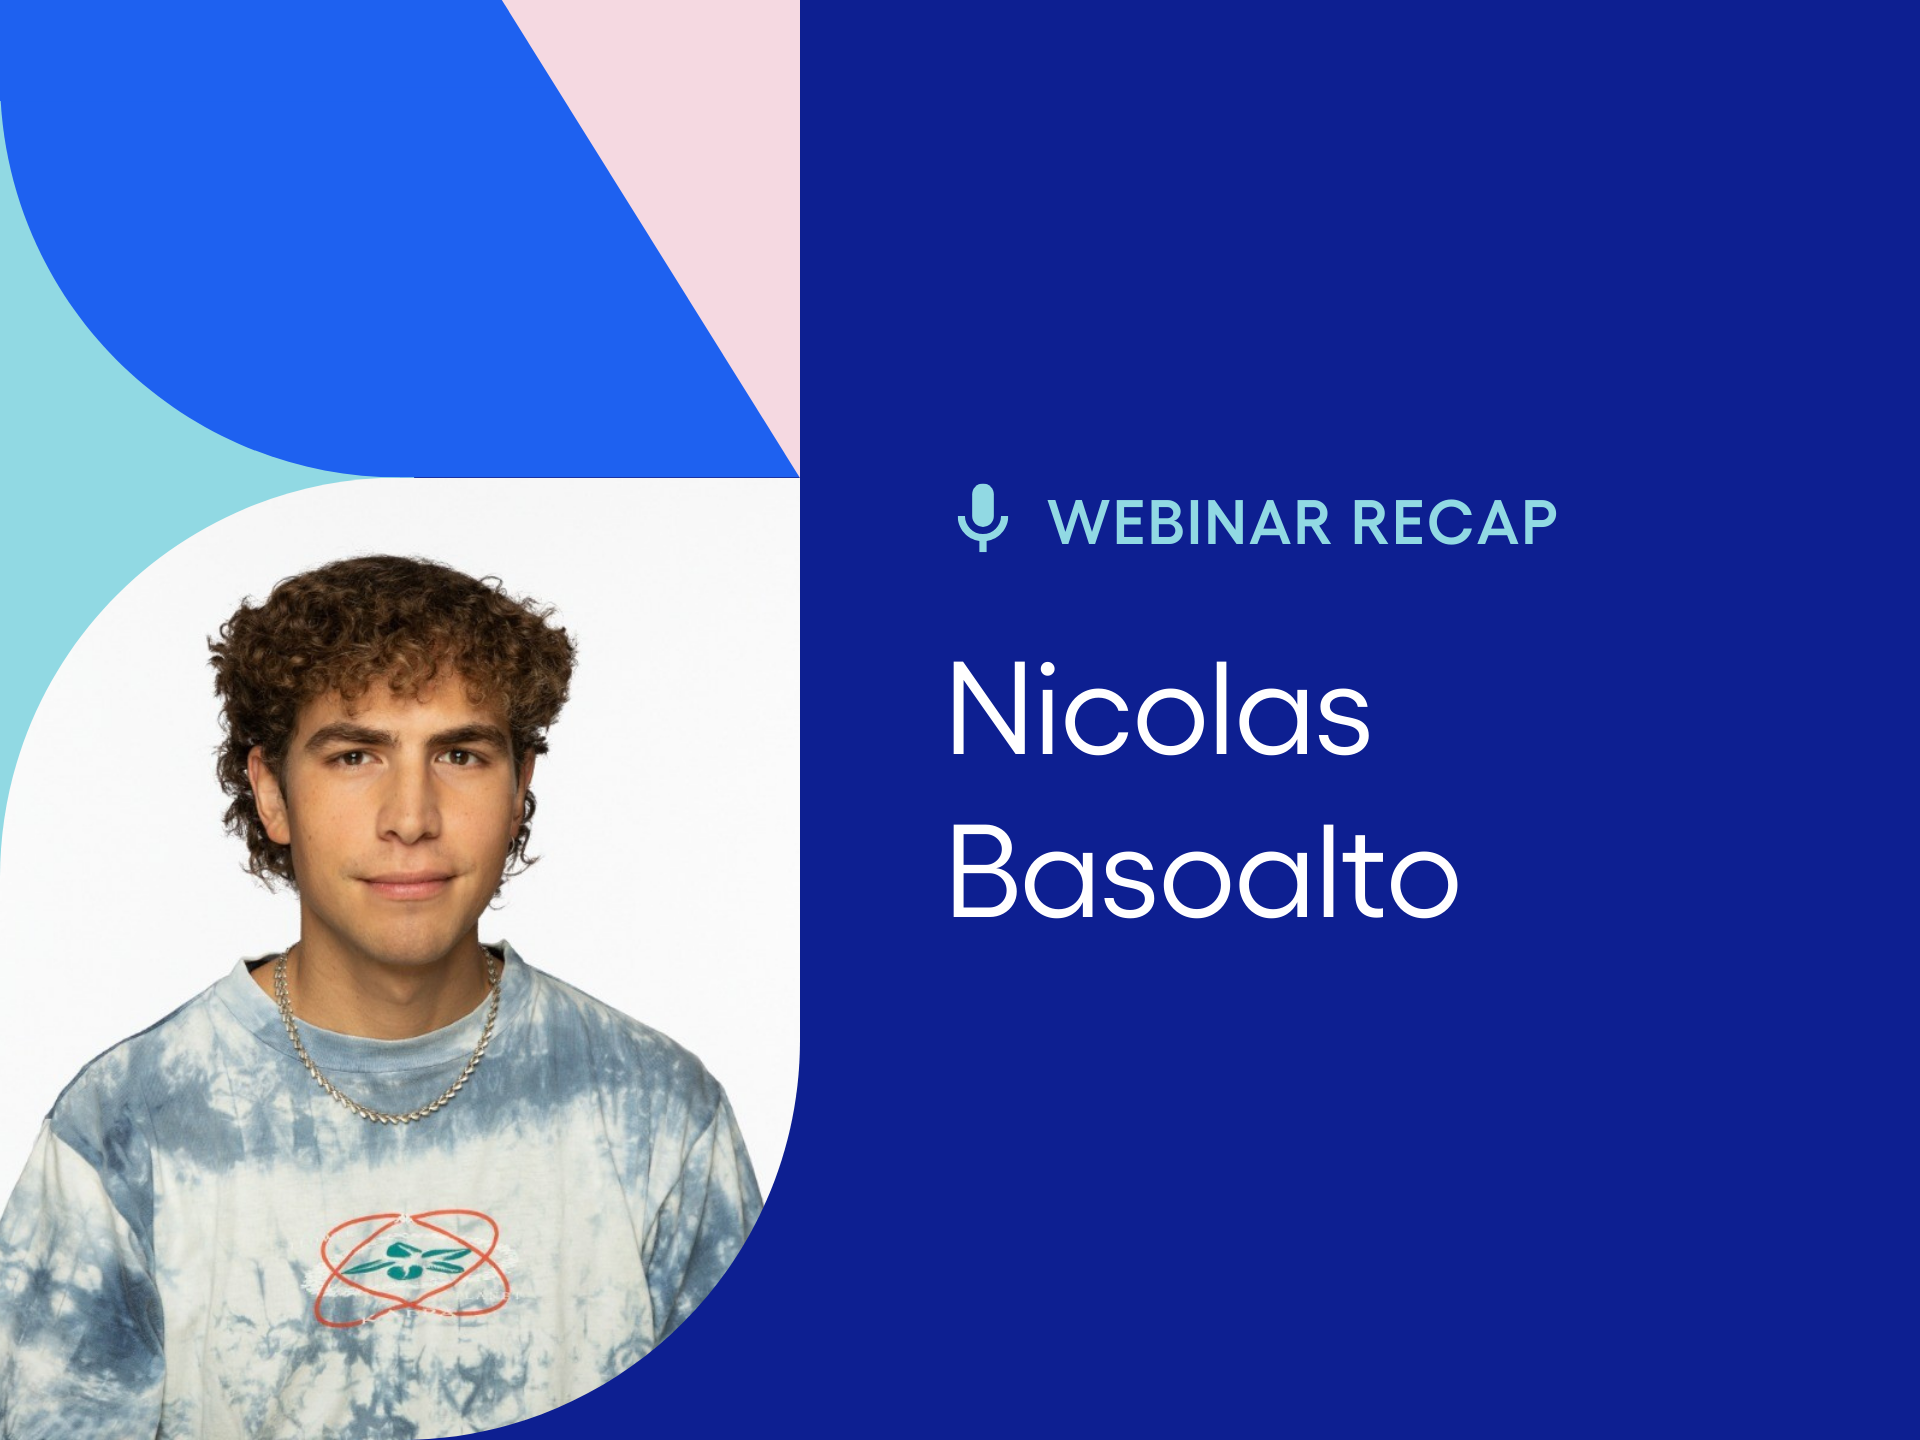 Webinar recap with Nicolas Basoalto, TicketSwap